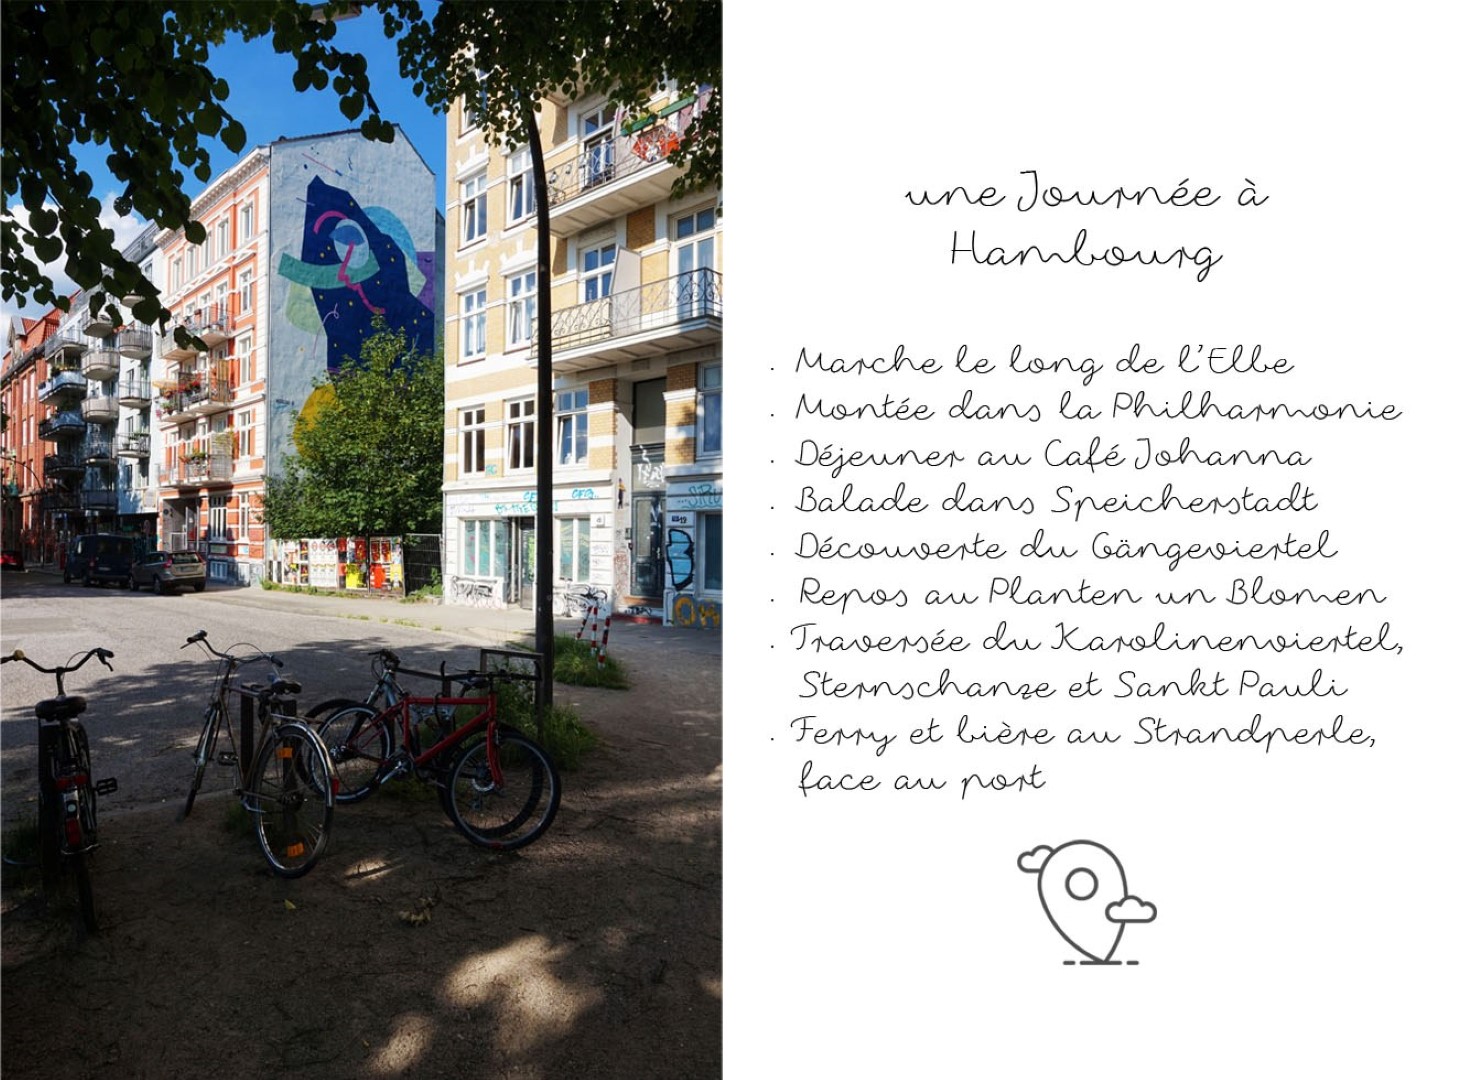 Un jour à Hambourg - City Guide - Blog voyage